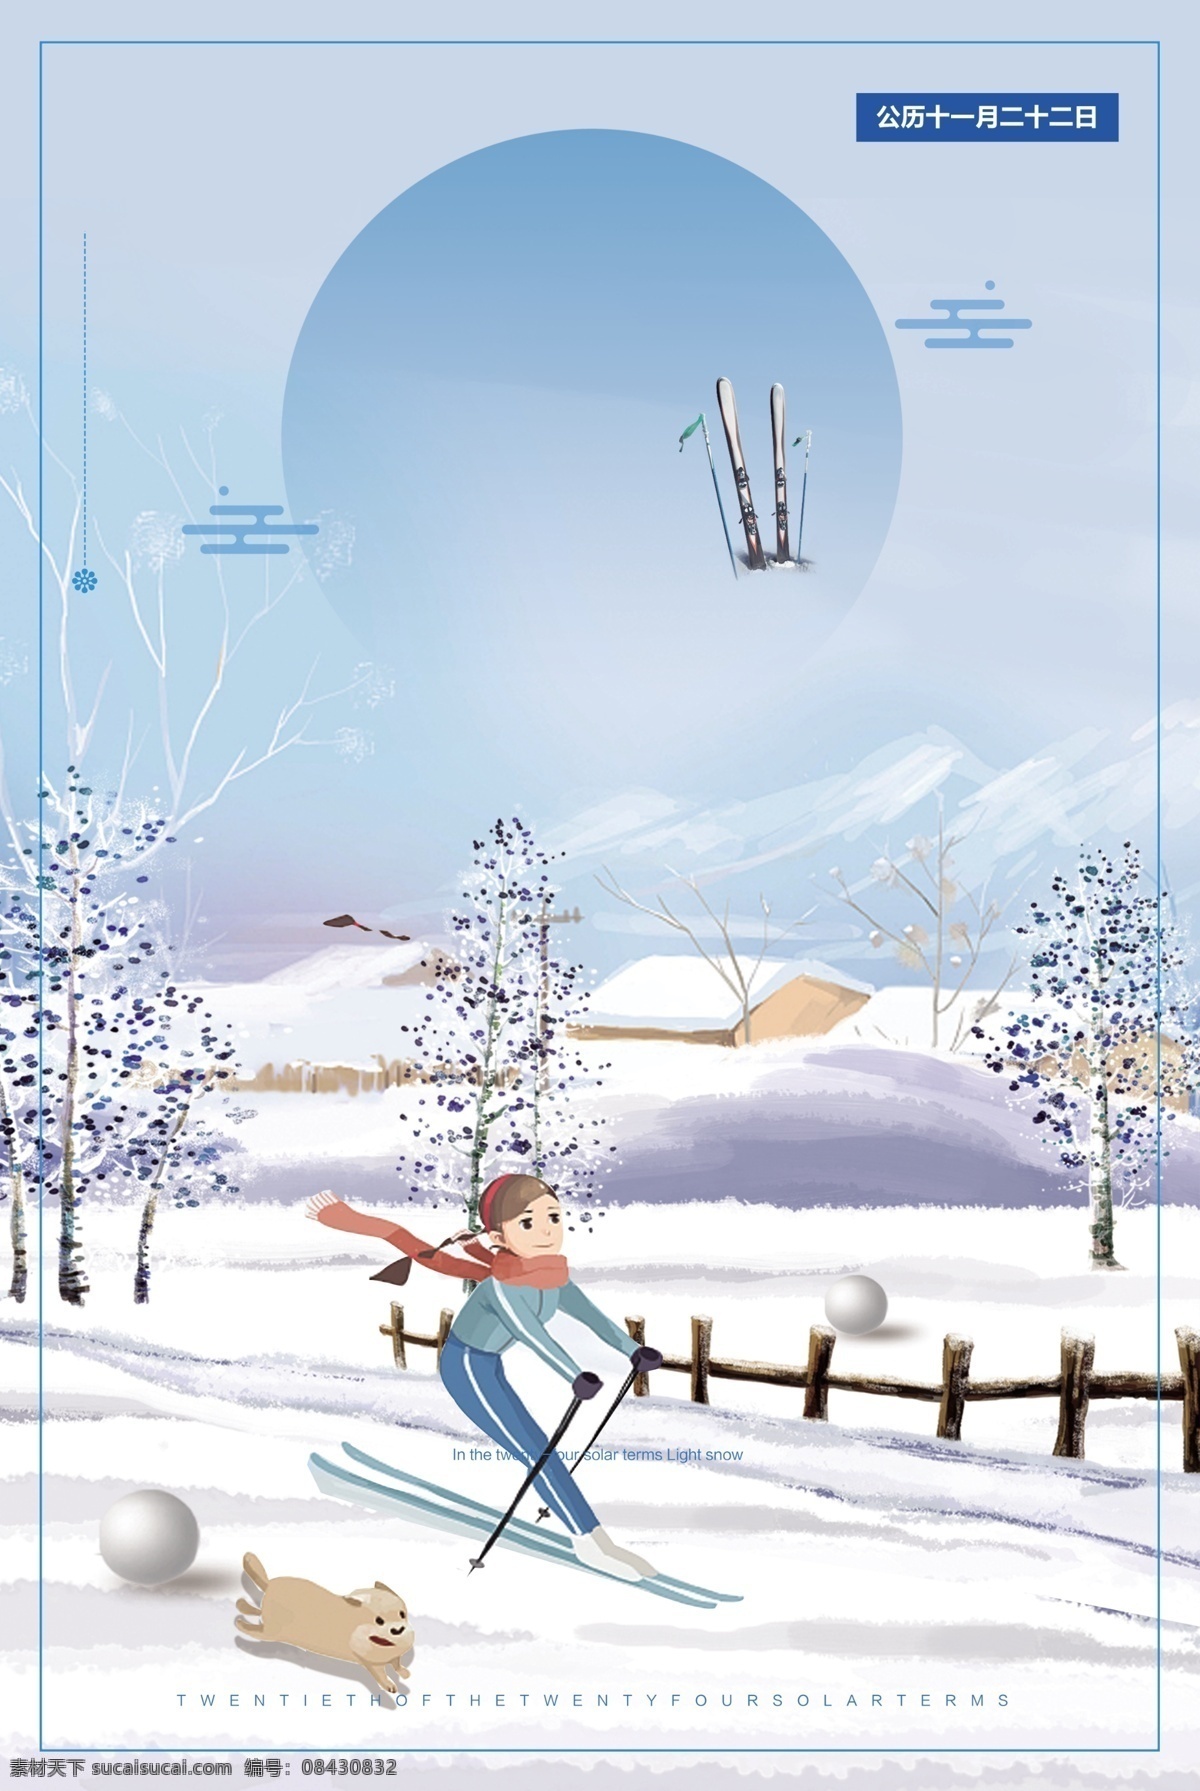 冬季 滑雪 女孩 背景 旅游 冰雪背景 雪花 背景设计 冬季滑雪 滑雪海报 激情滑雪 滑雪比赛 冬季活动背景 滑雪展板